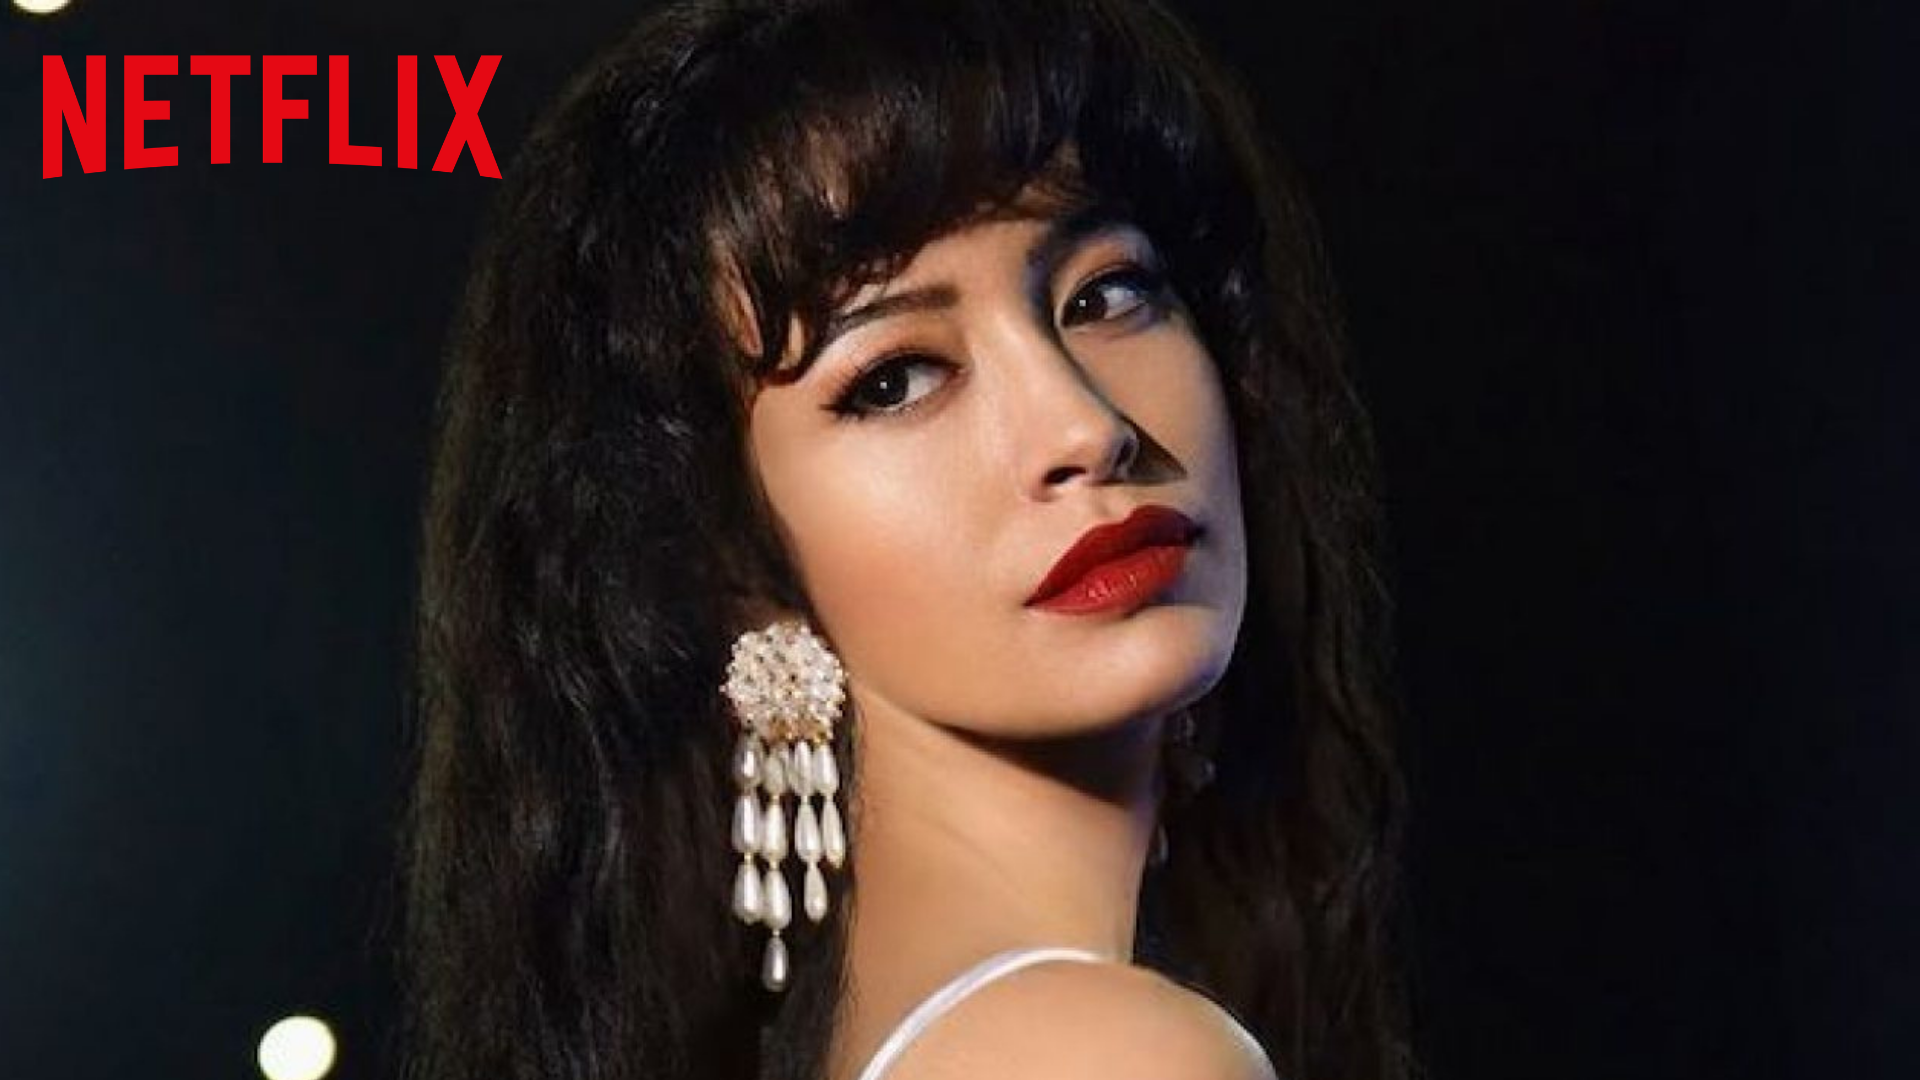 Selena la série : nouveau trailer pour le show Netflix avec Christian Serratos (The Walking Dead)